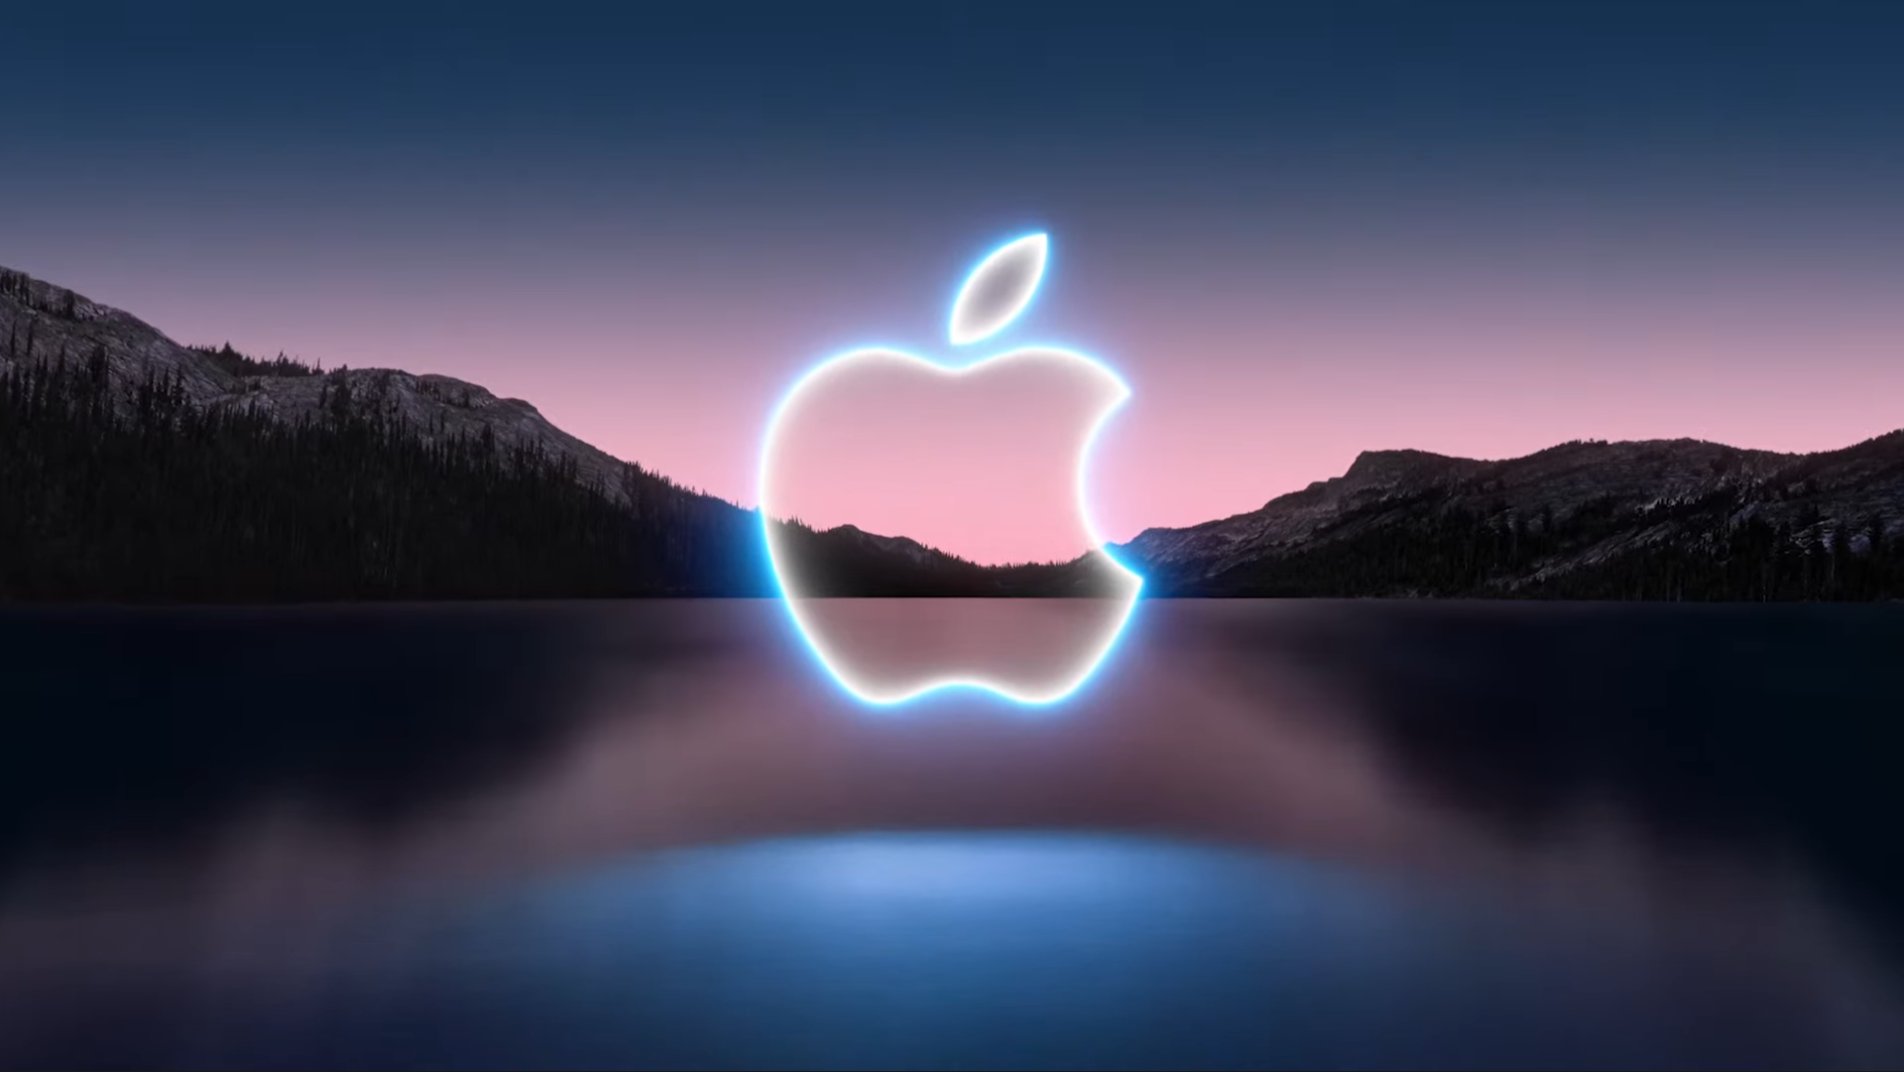 La première keynote Apple de l'année attendue le 8 mars, iPhone SE et iPad Air au programme